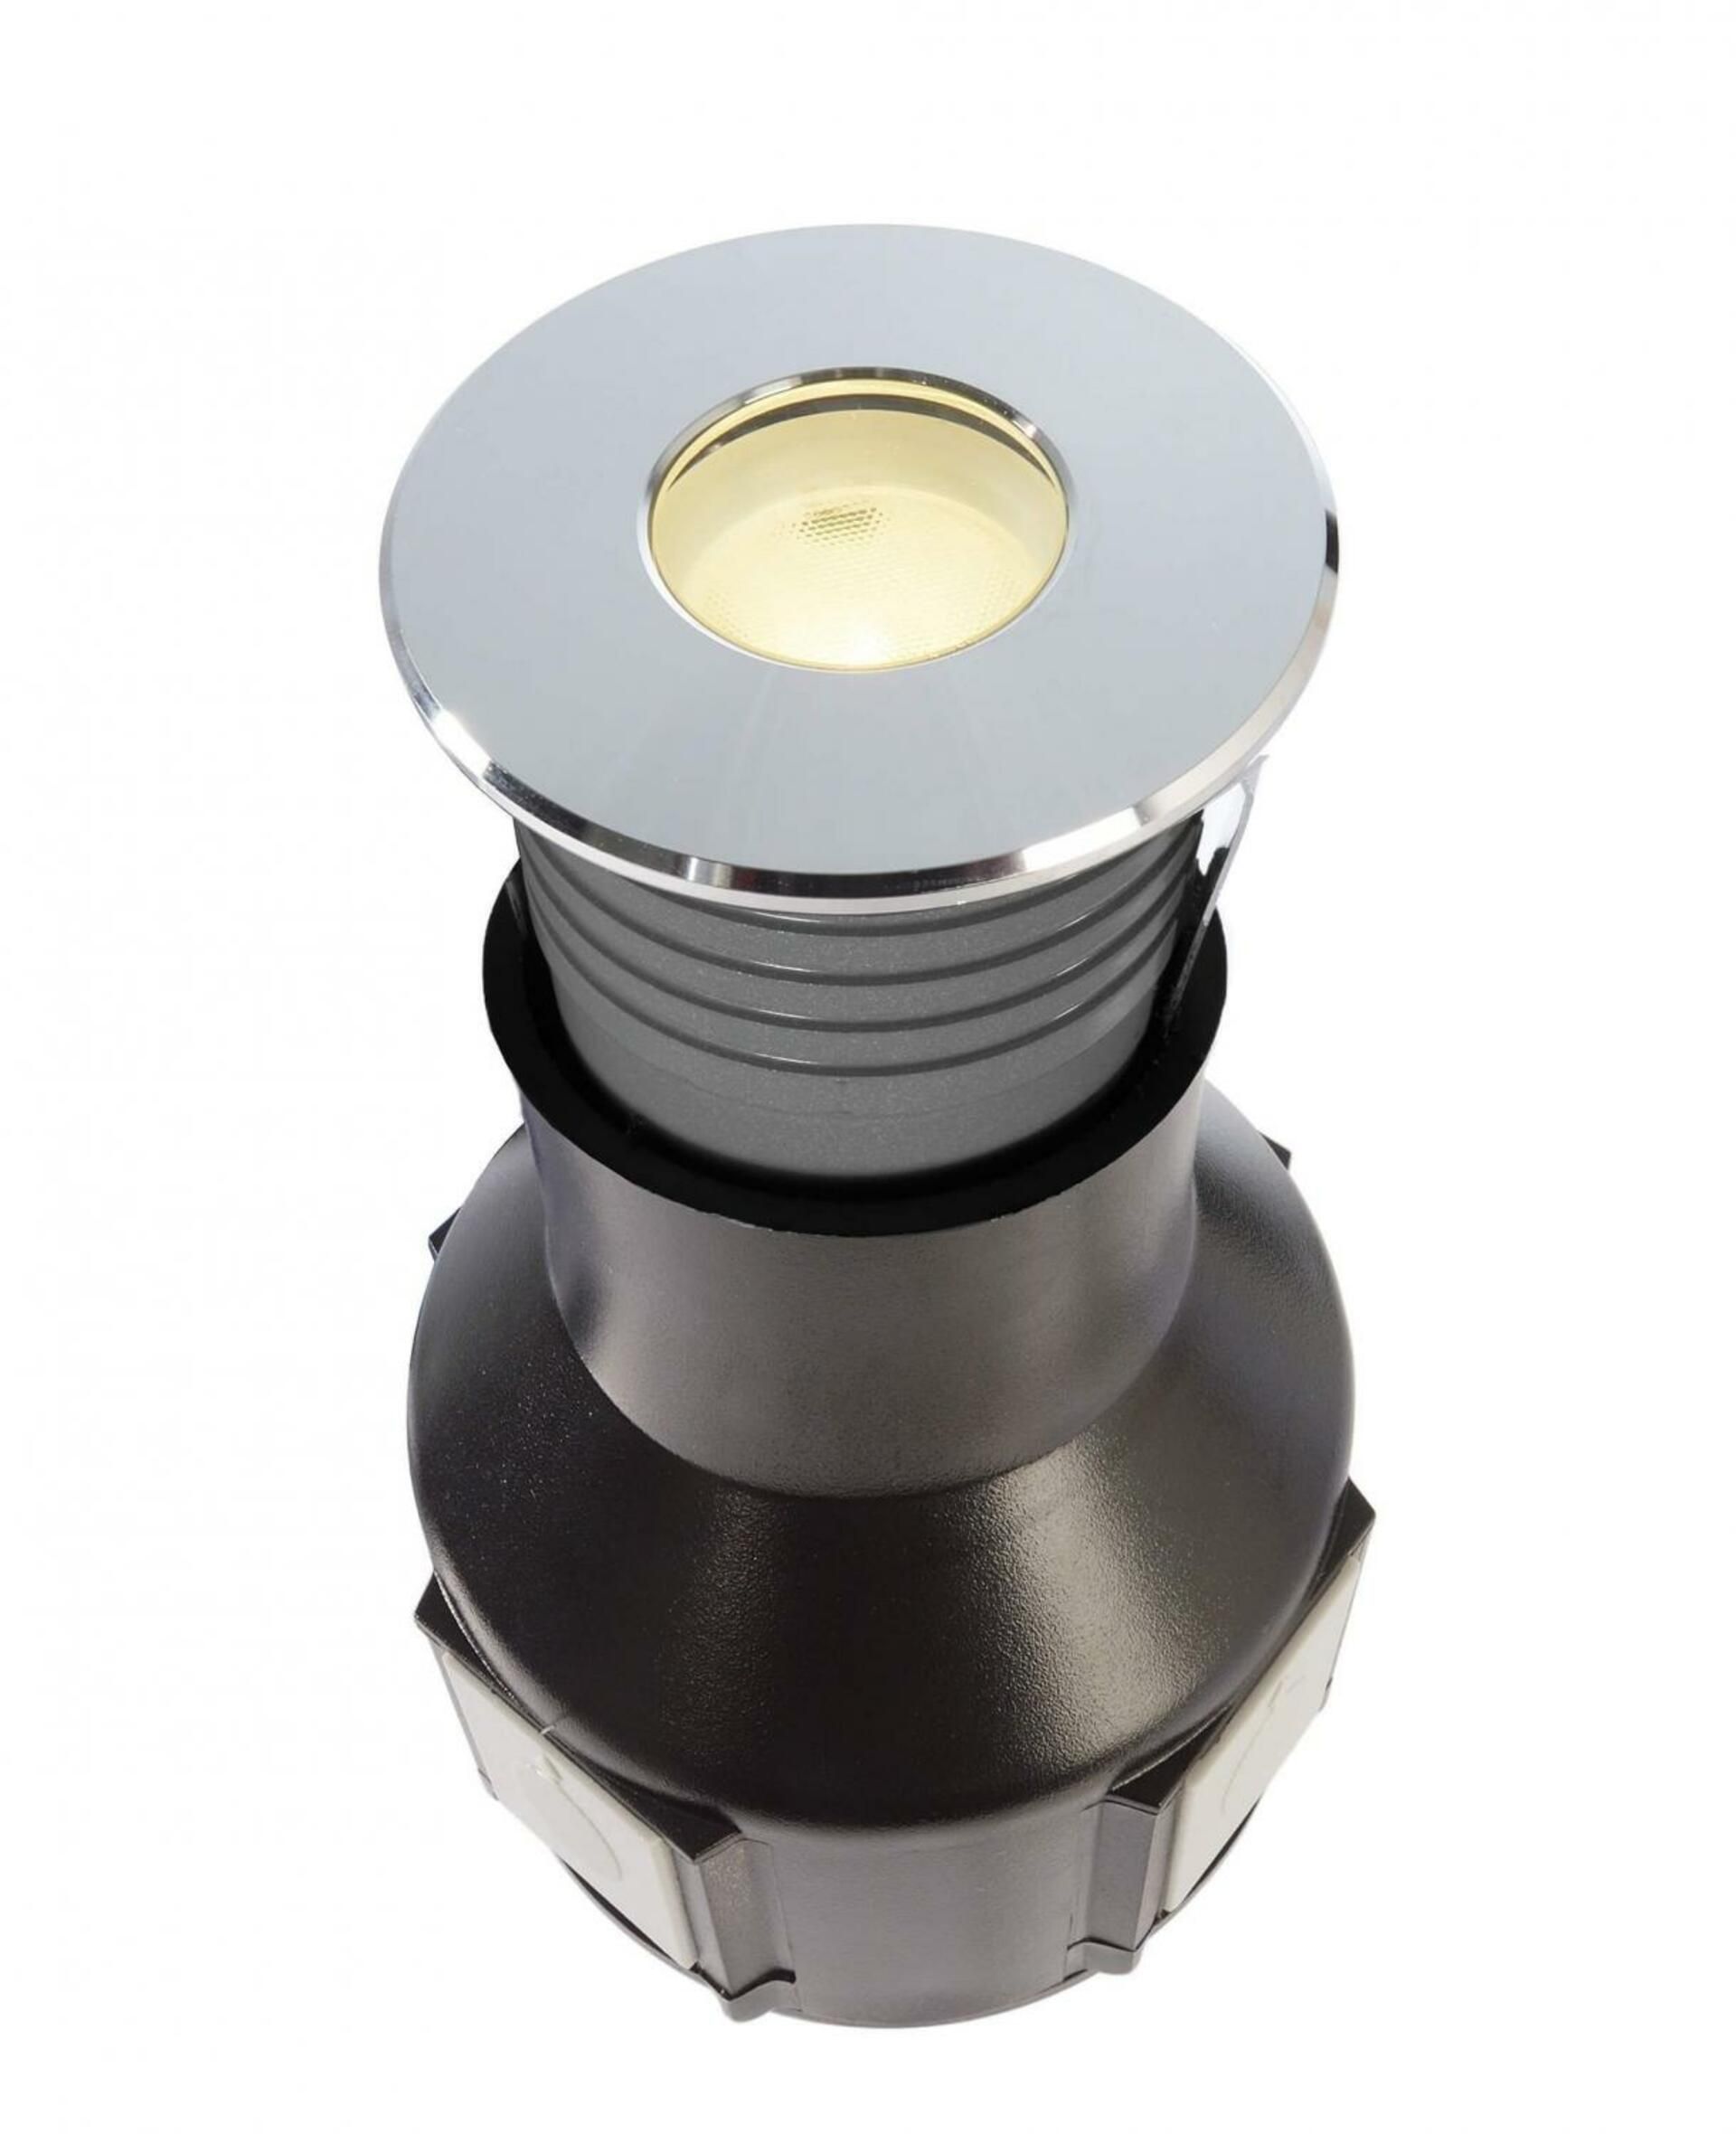 Light Impressions Deko-Light zemní svítidlo Alzirr II 24V DC 2,40 W 3000 K 150 lm stříbrná 730470